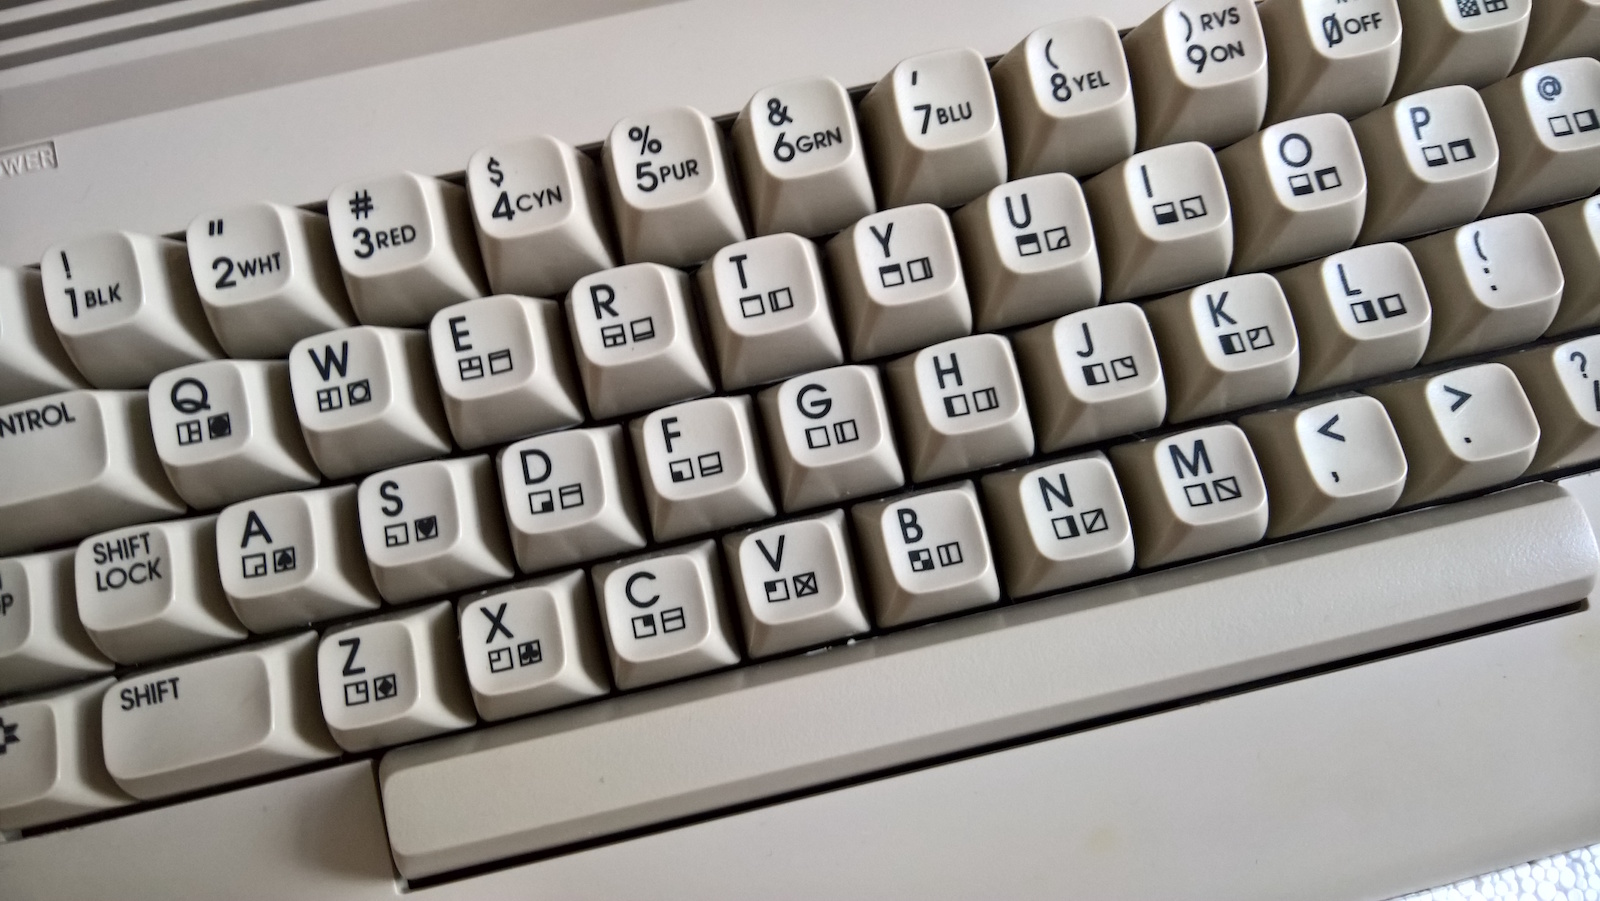 Letzte Revision der Tastatur. (Bild: Stefan Vogt)